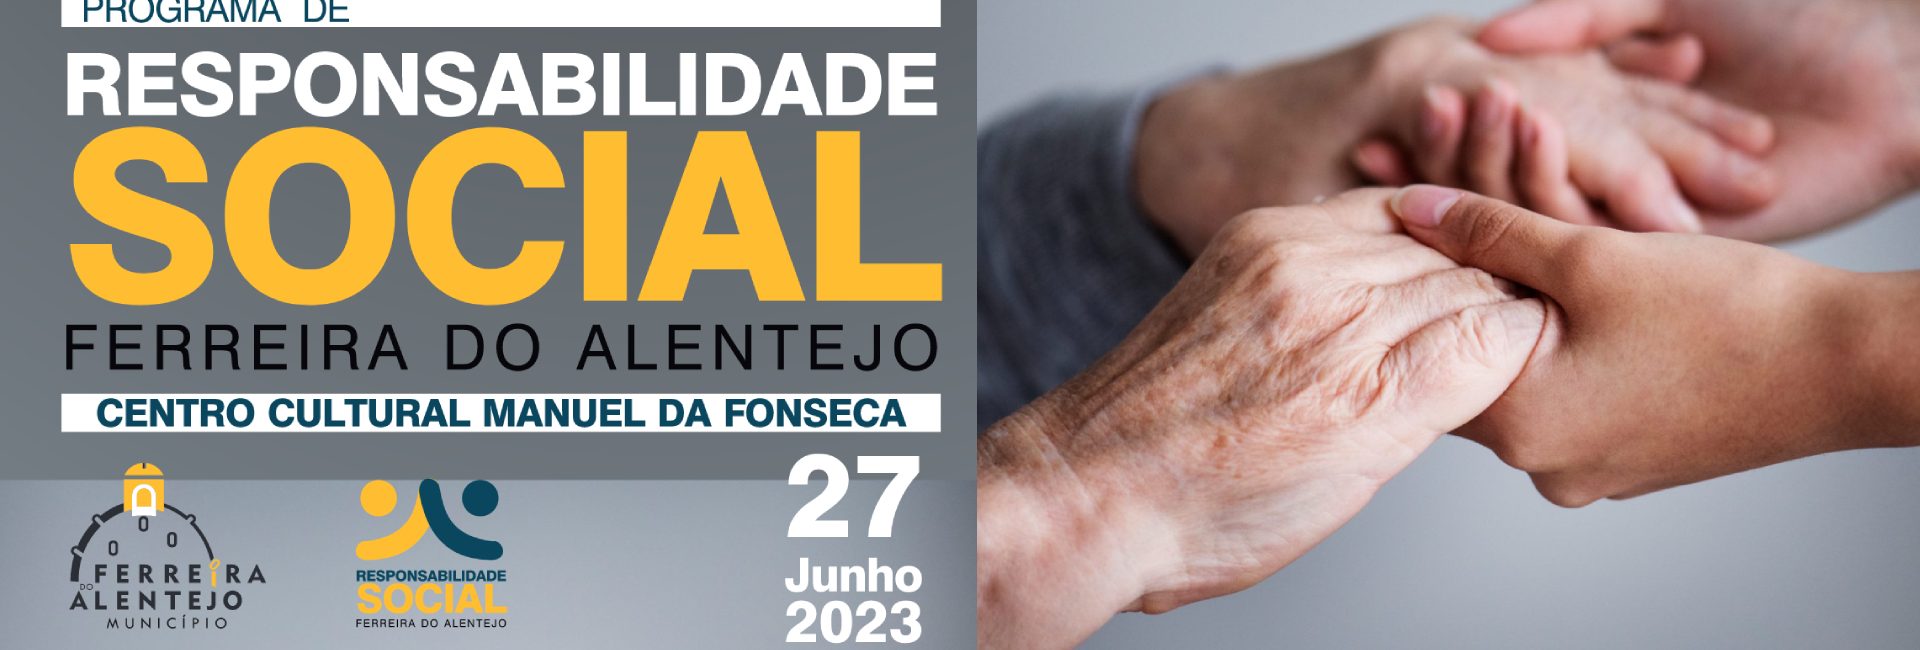 (Português) Câmara Municipal atribui distinção de responsabilidade social a empresas do concelho